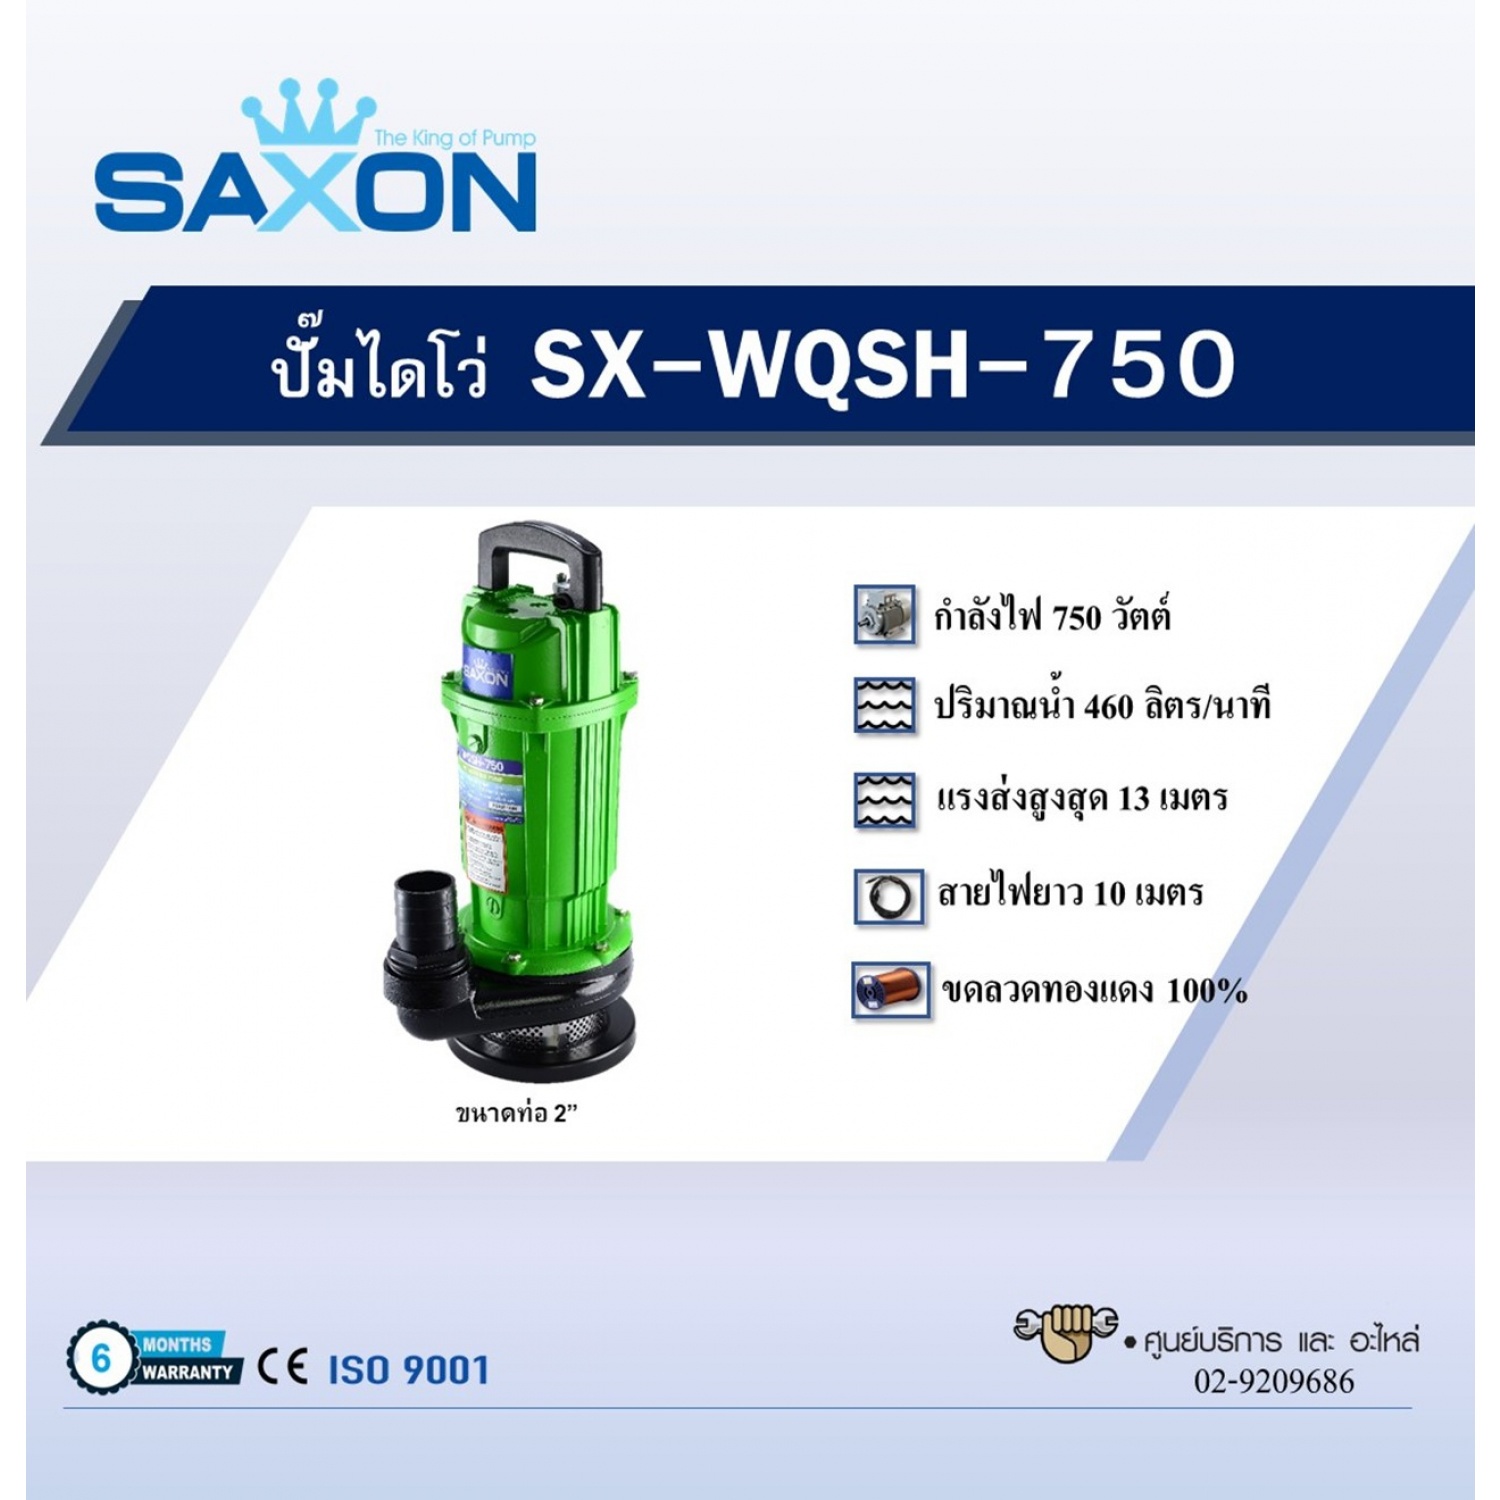 SAXON ปั๊มจุ่ม รุ่น SX-WQSH-750